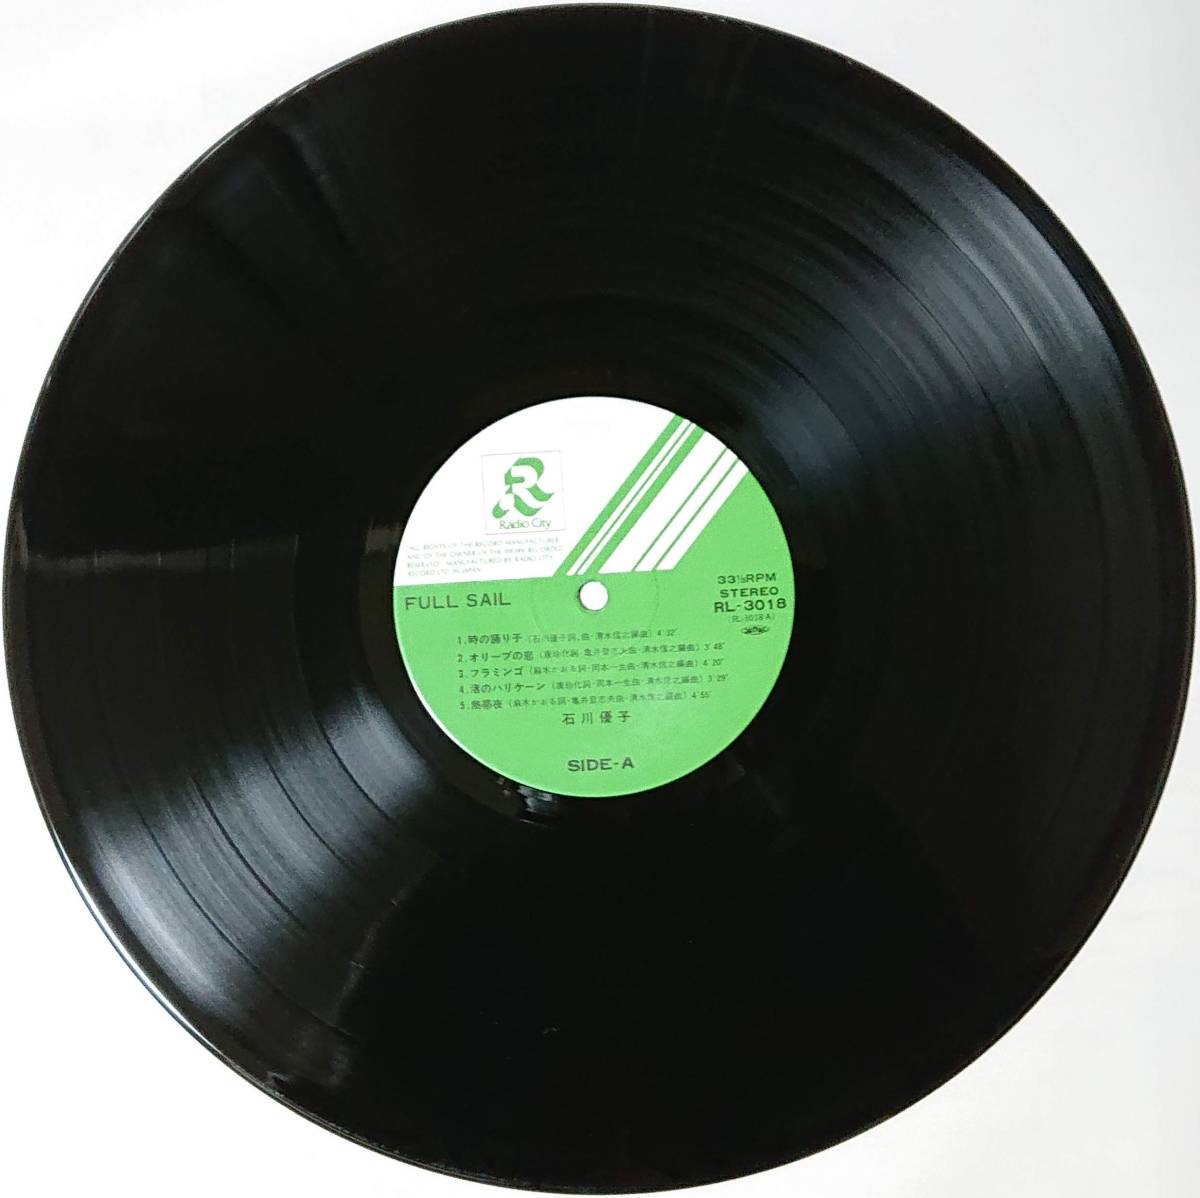 石川優子 : FULL SAIL フルセイル 帯付き 国内盤 中古 アナログ LPレコード盤 1982年 RL-3018 M2-KDO-590_画像3